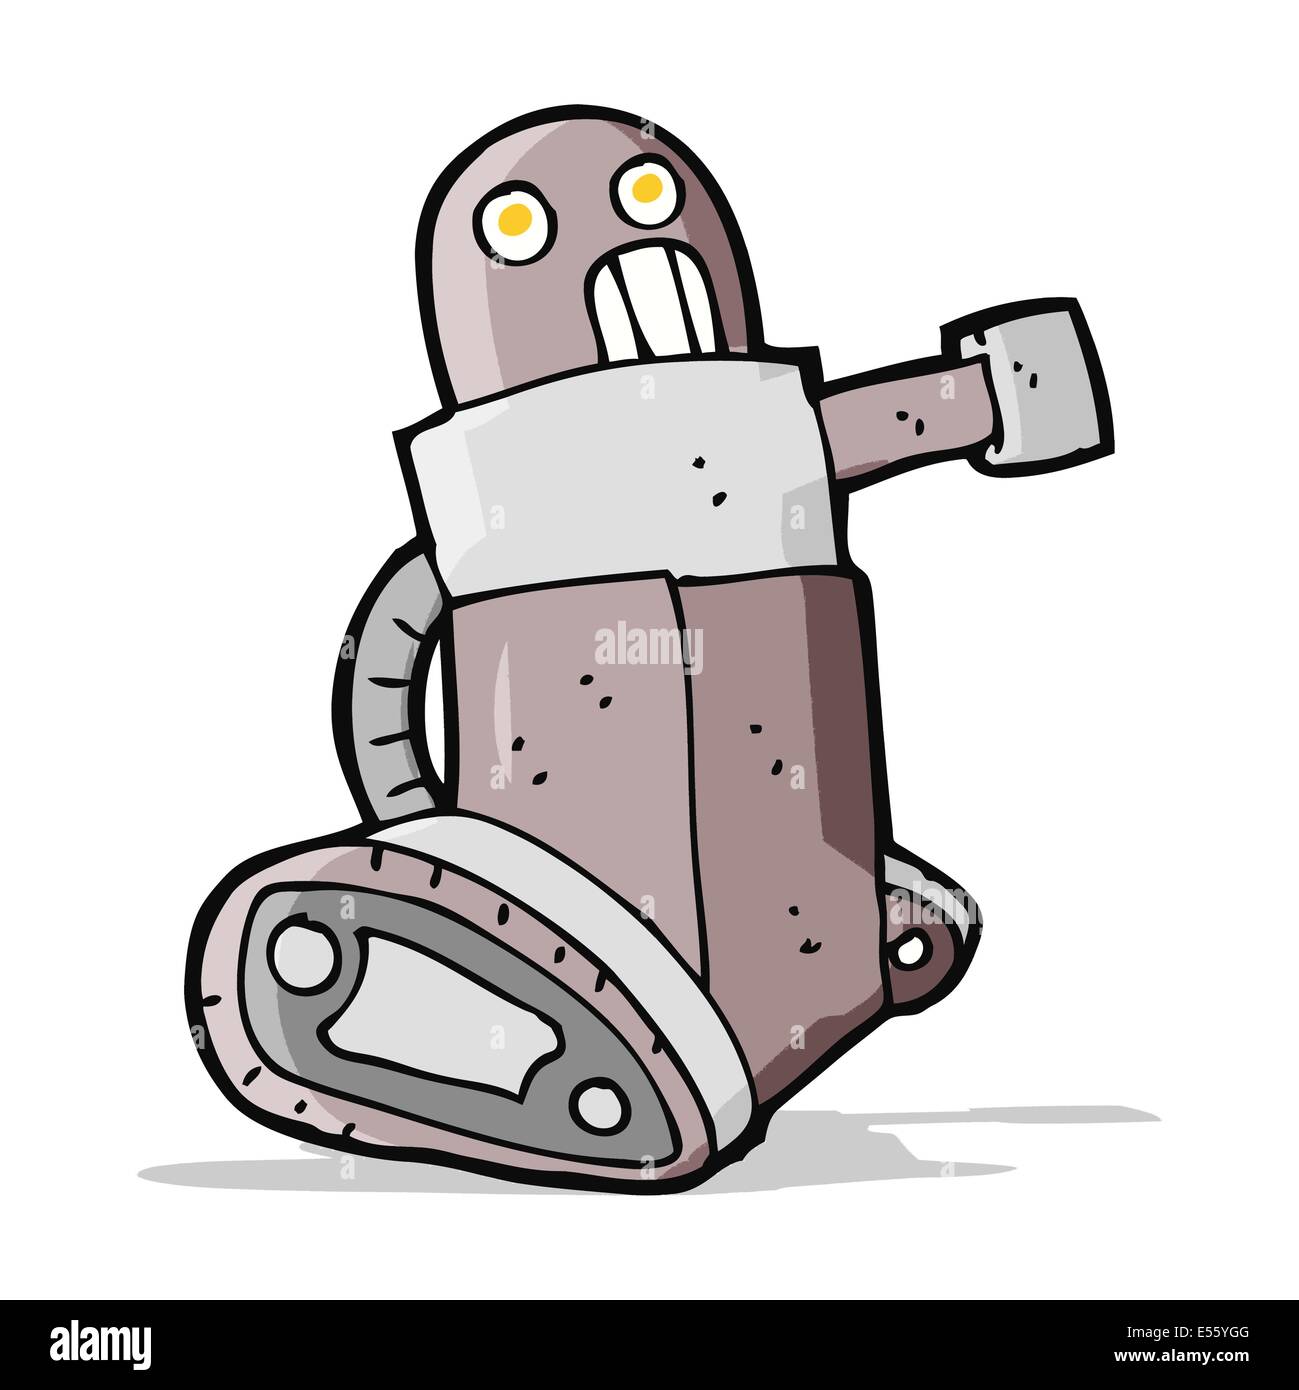 cartoon tank robot Stock Vector Image & Art - Alamy